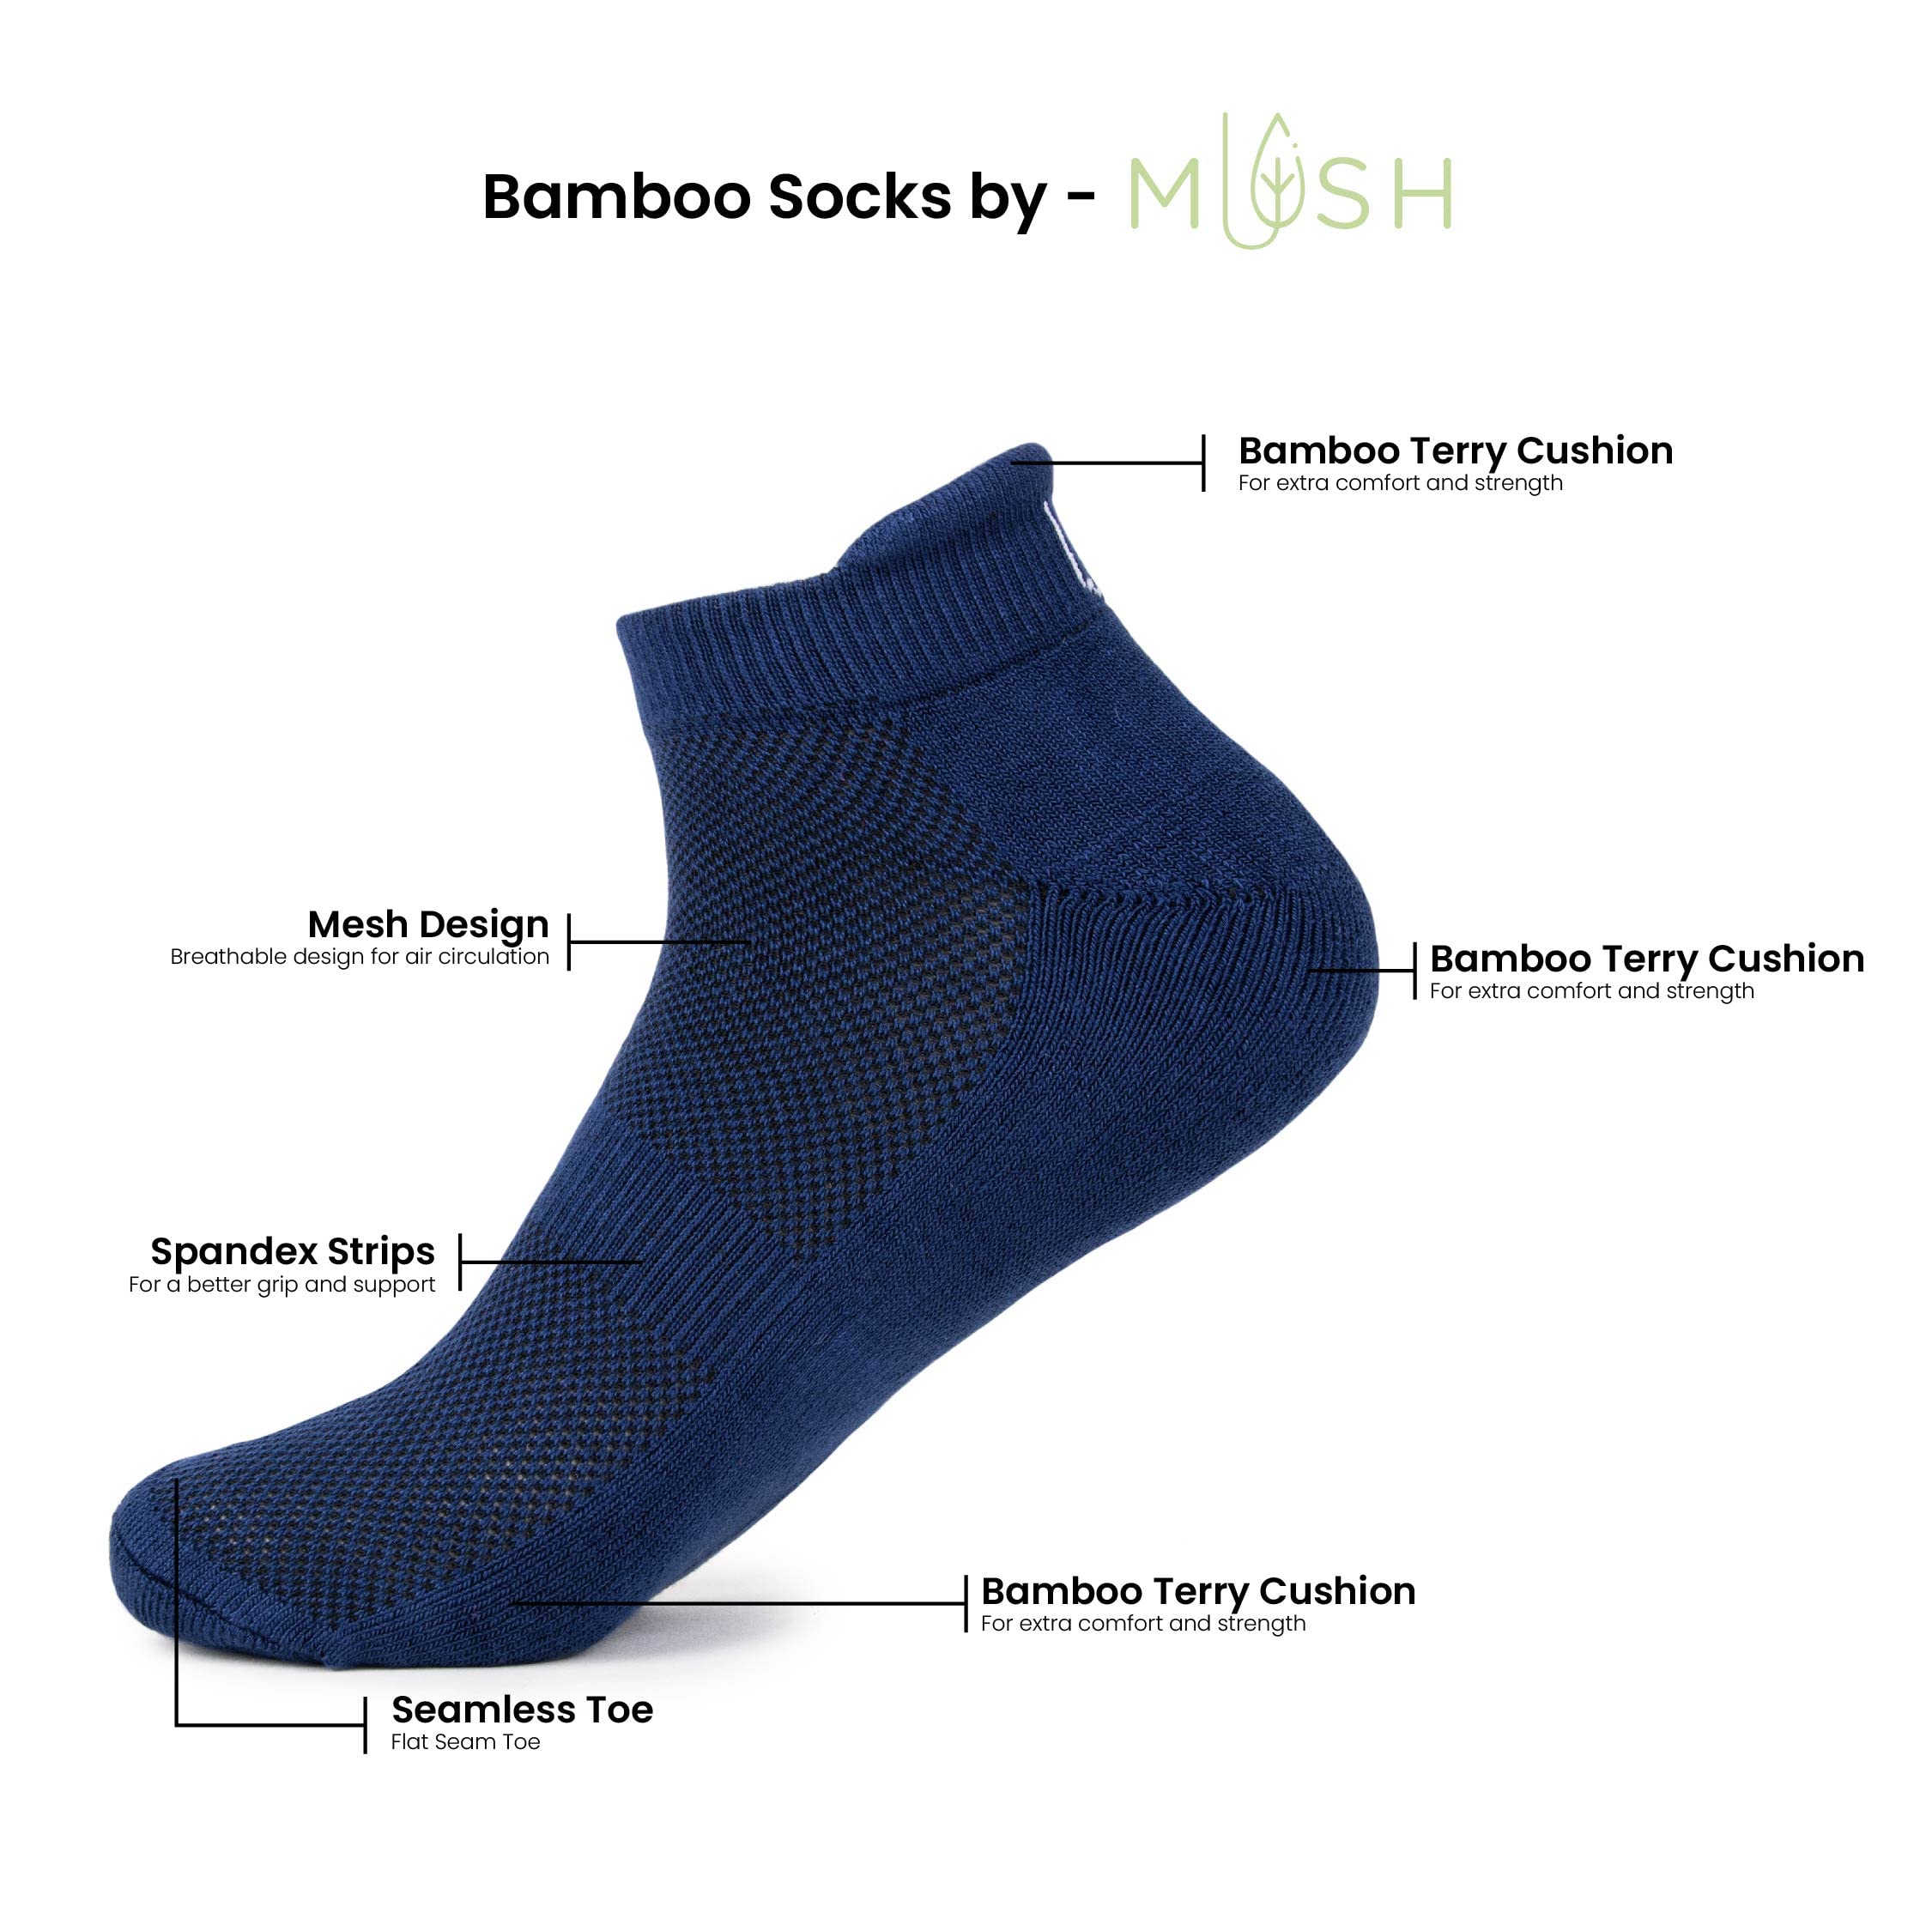 Mush Bamboo Ultra Soft, Anti Odor, Breathable, Anti Blister Ankle Socks for Men & Women for Running, Sports & Gym (Pack of 3)